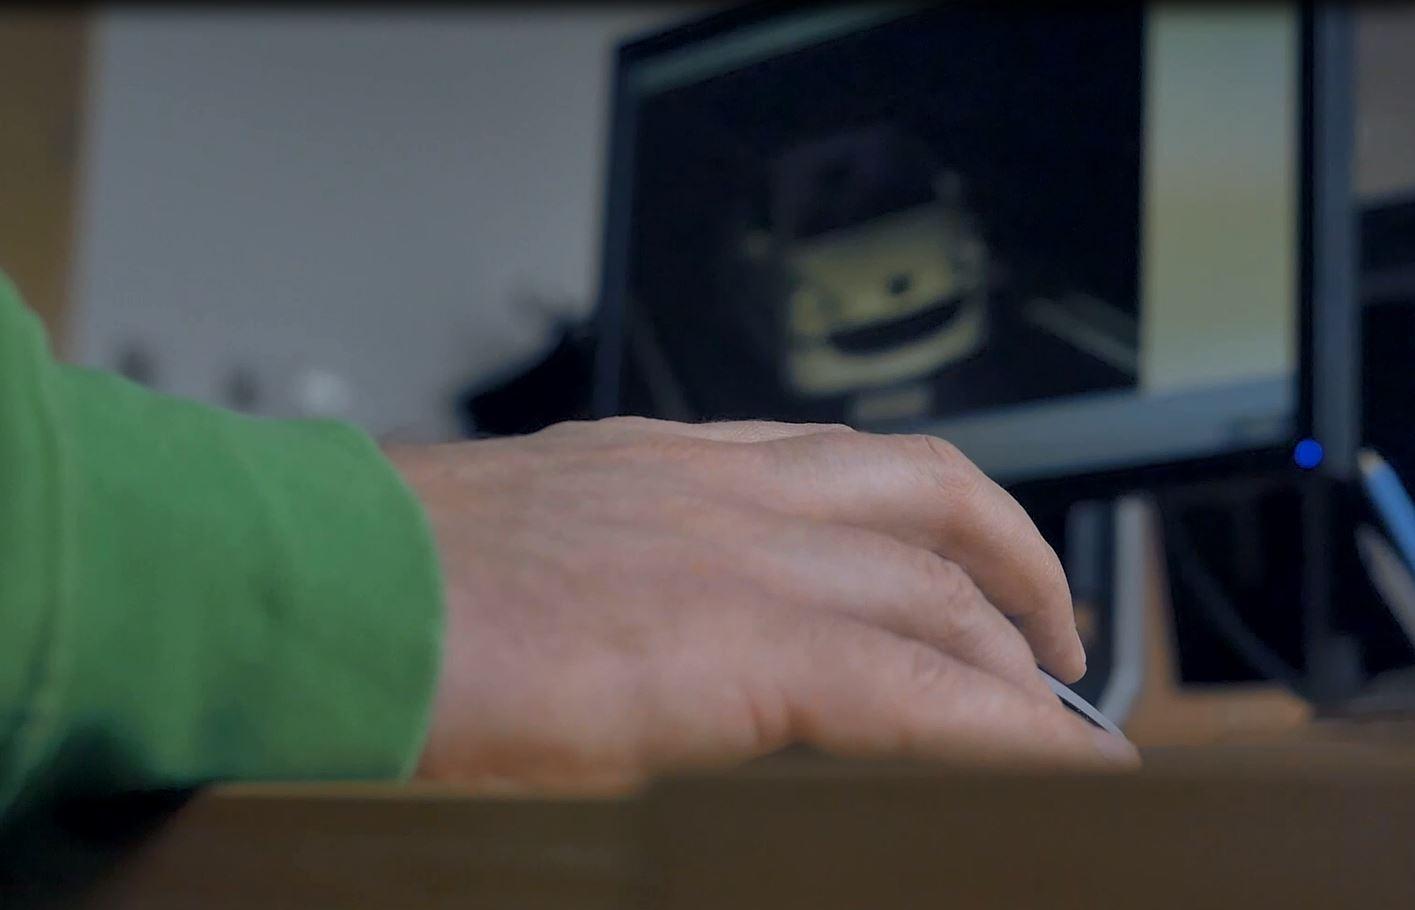 Dłoń na tle ekranu monitora ze zdjęciem z fotoradaru